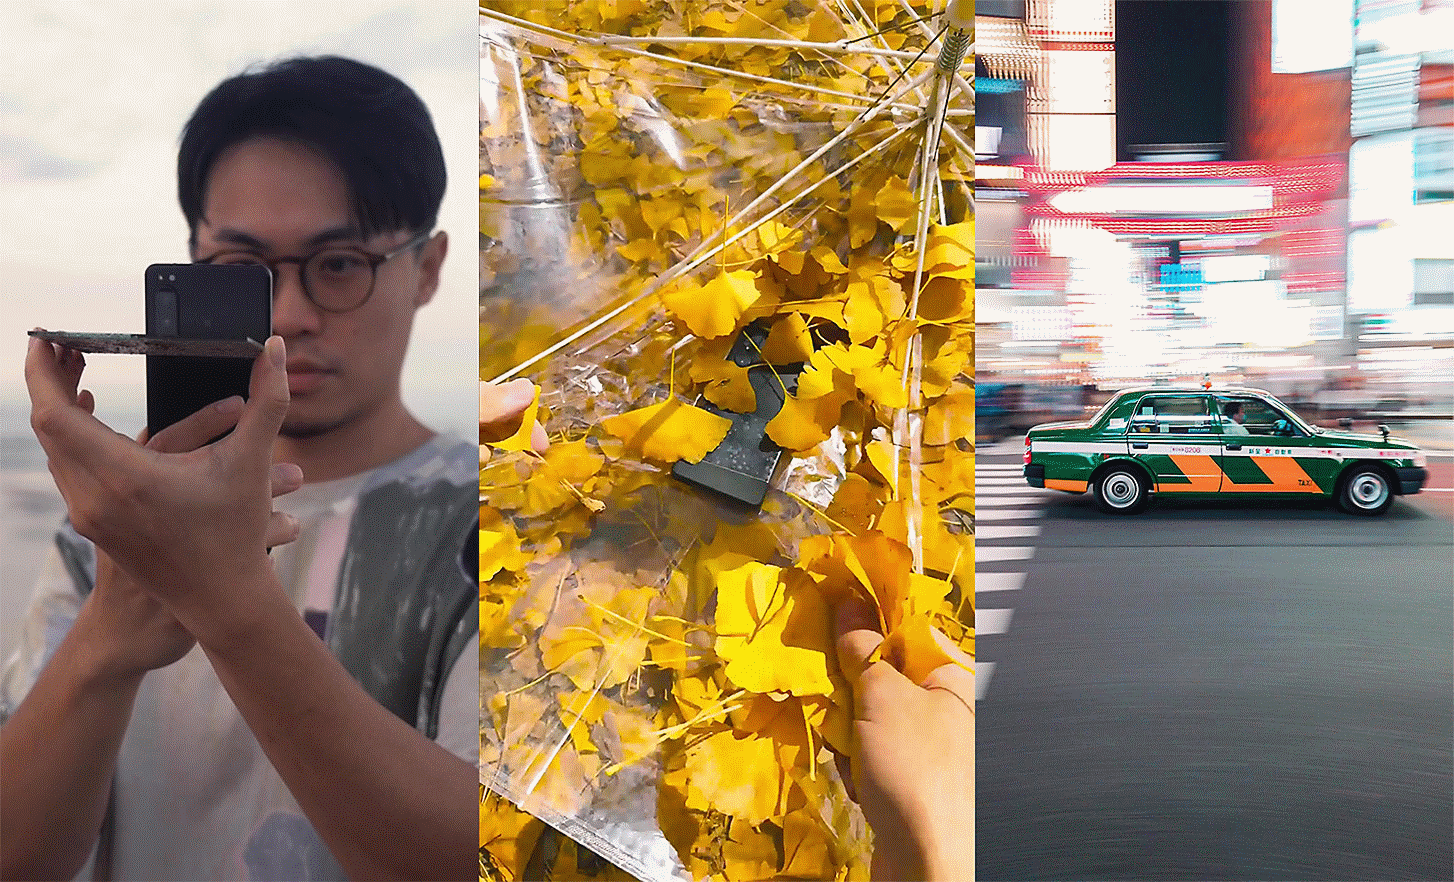 Kolme kuvaa vierekkäin: vasemmalla valokuvaa ottava henkilö, keskellä lehtien seassa oleva puhelin ja oikealla kaupungin tiellä oleva auto